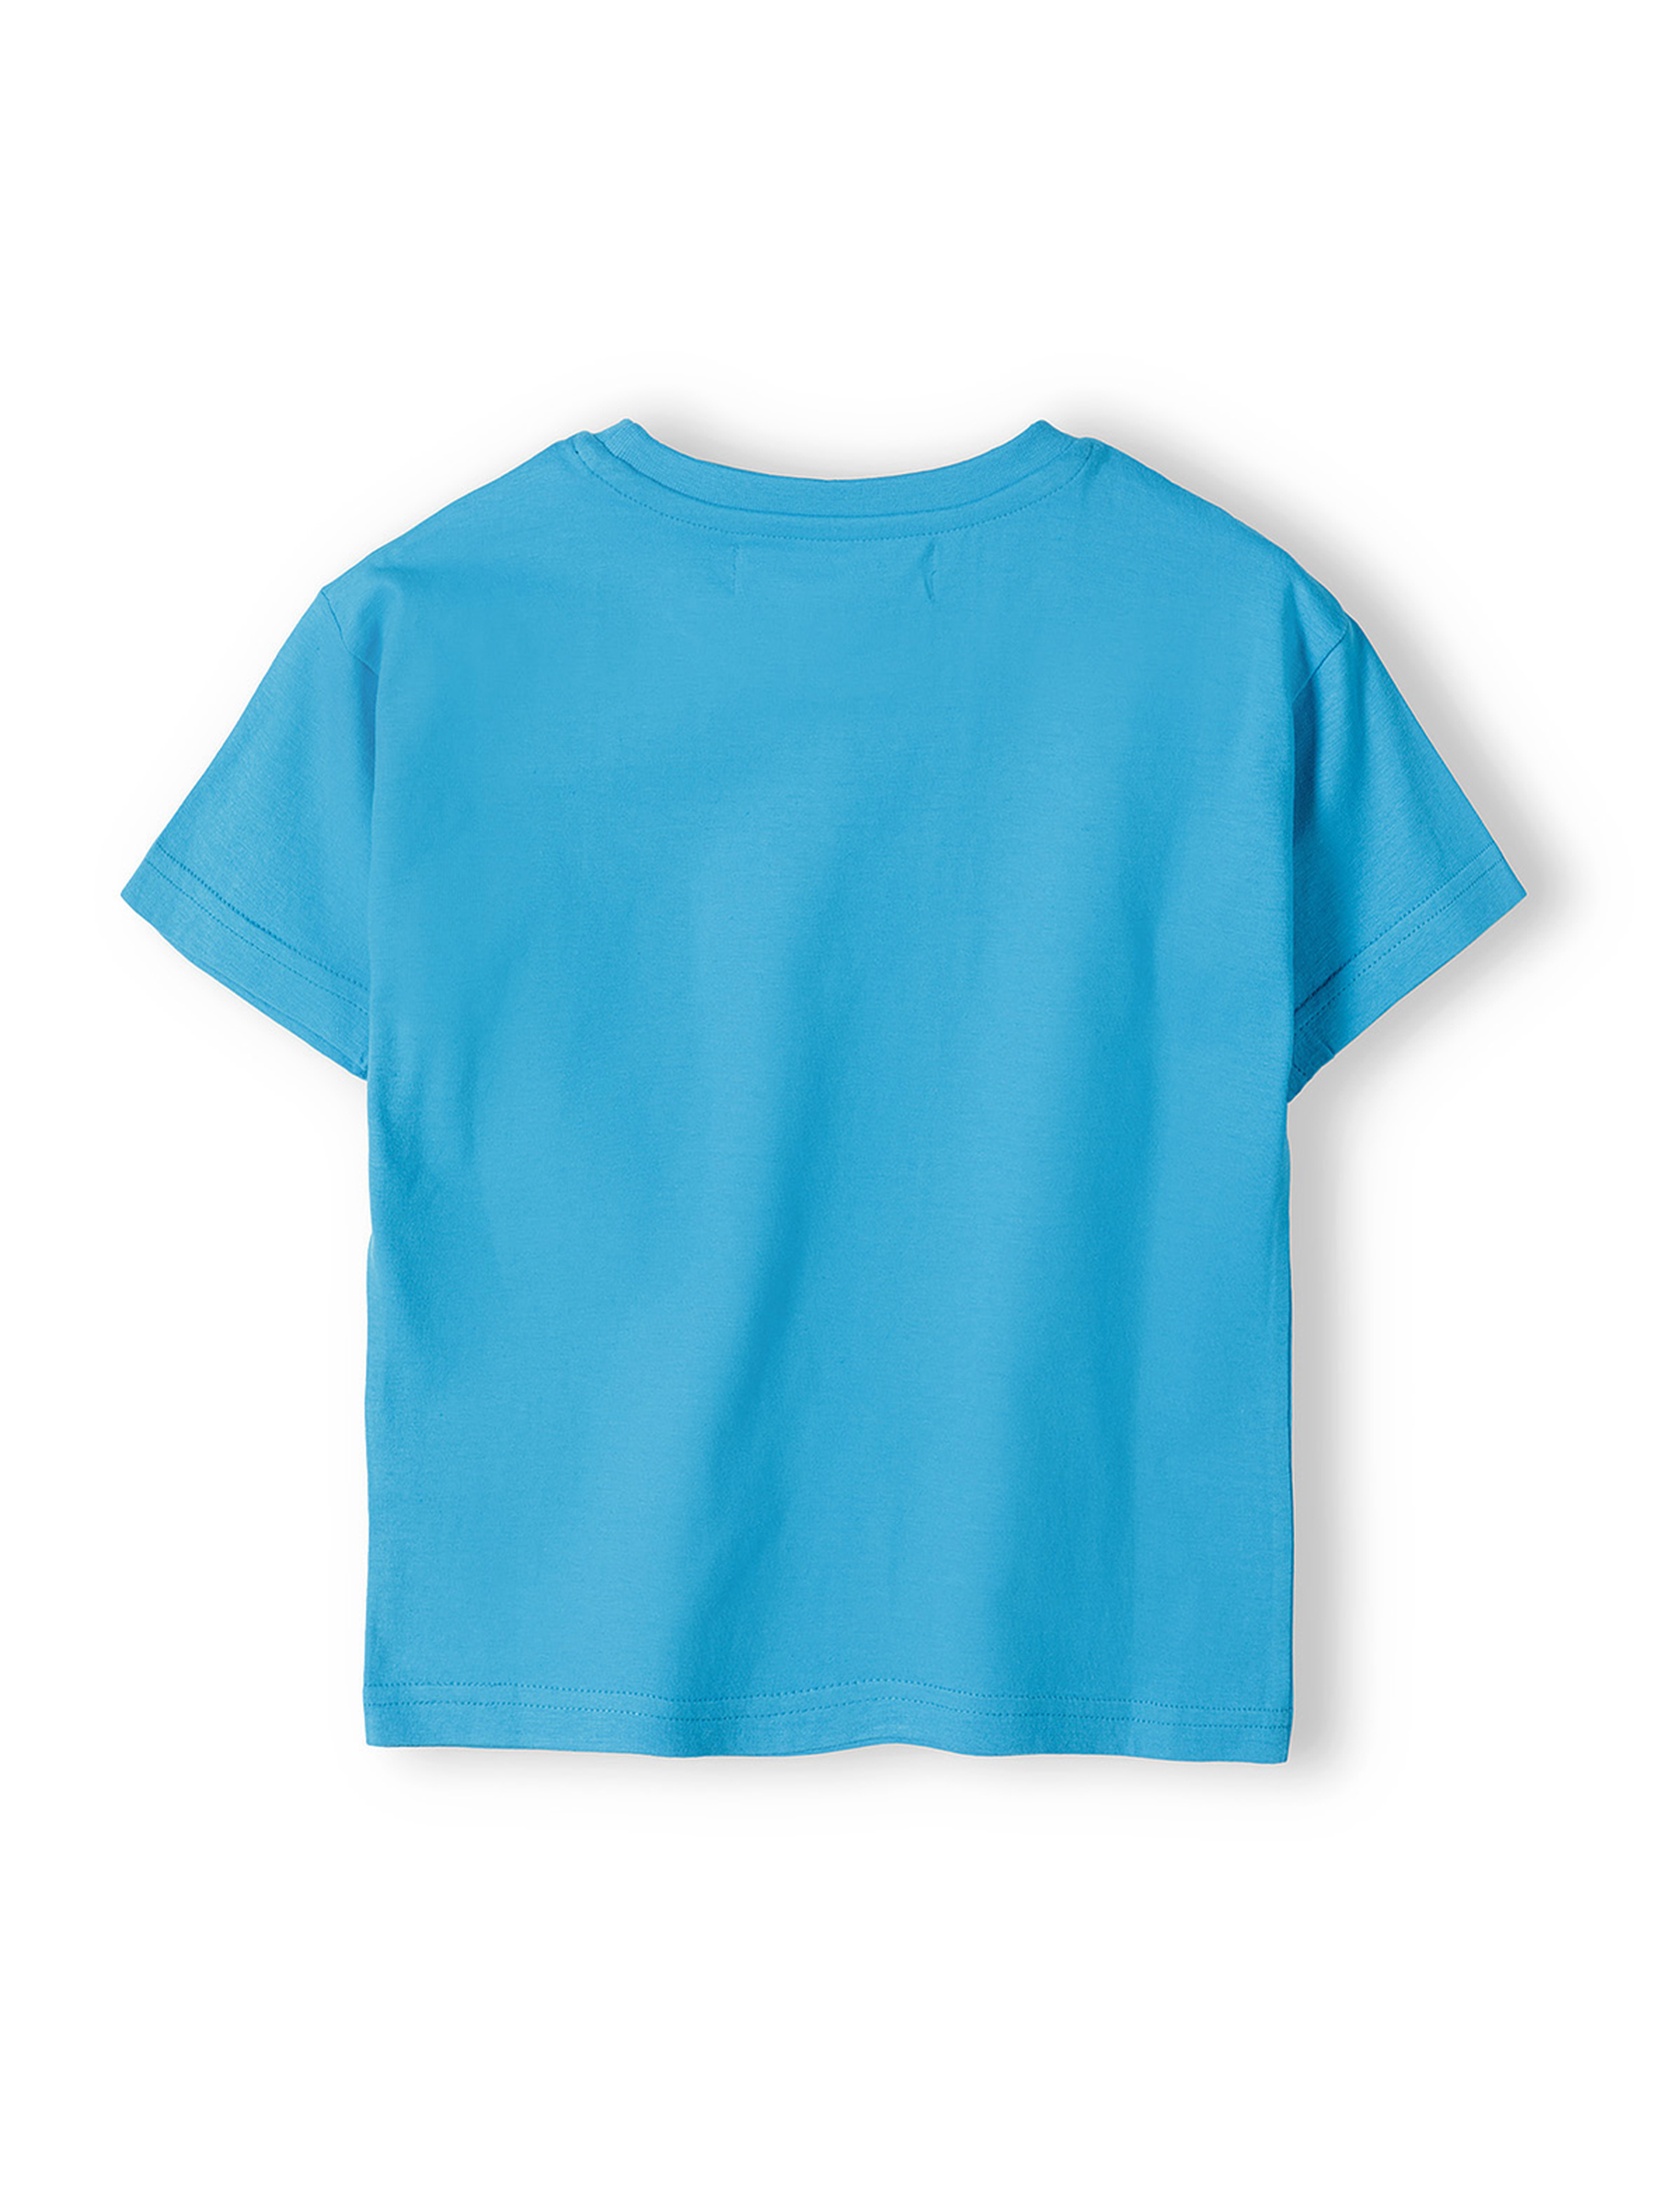 Bawełniany t-shirt dla niemowlaka 3-pak